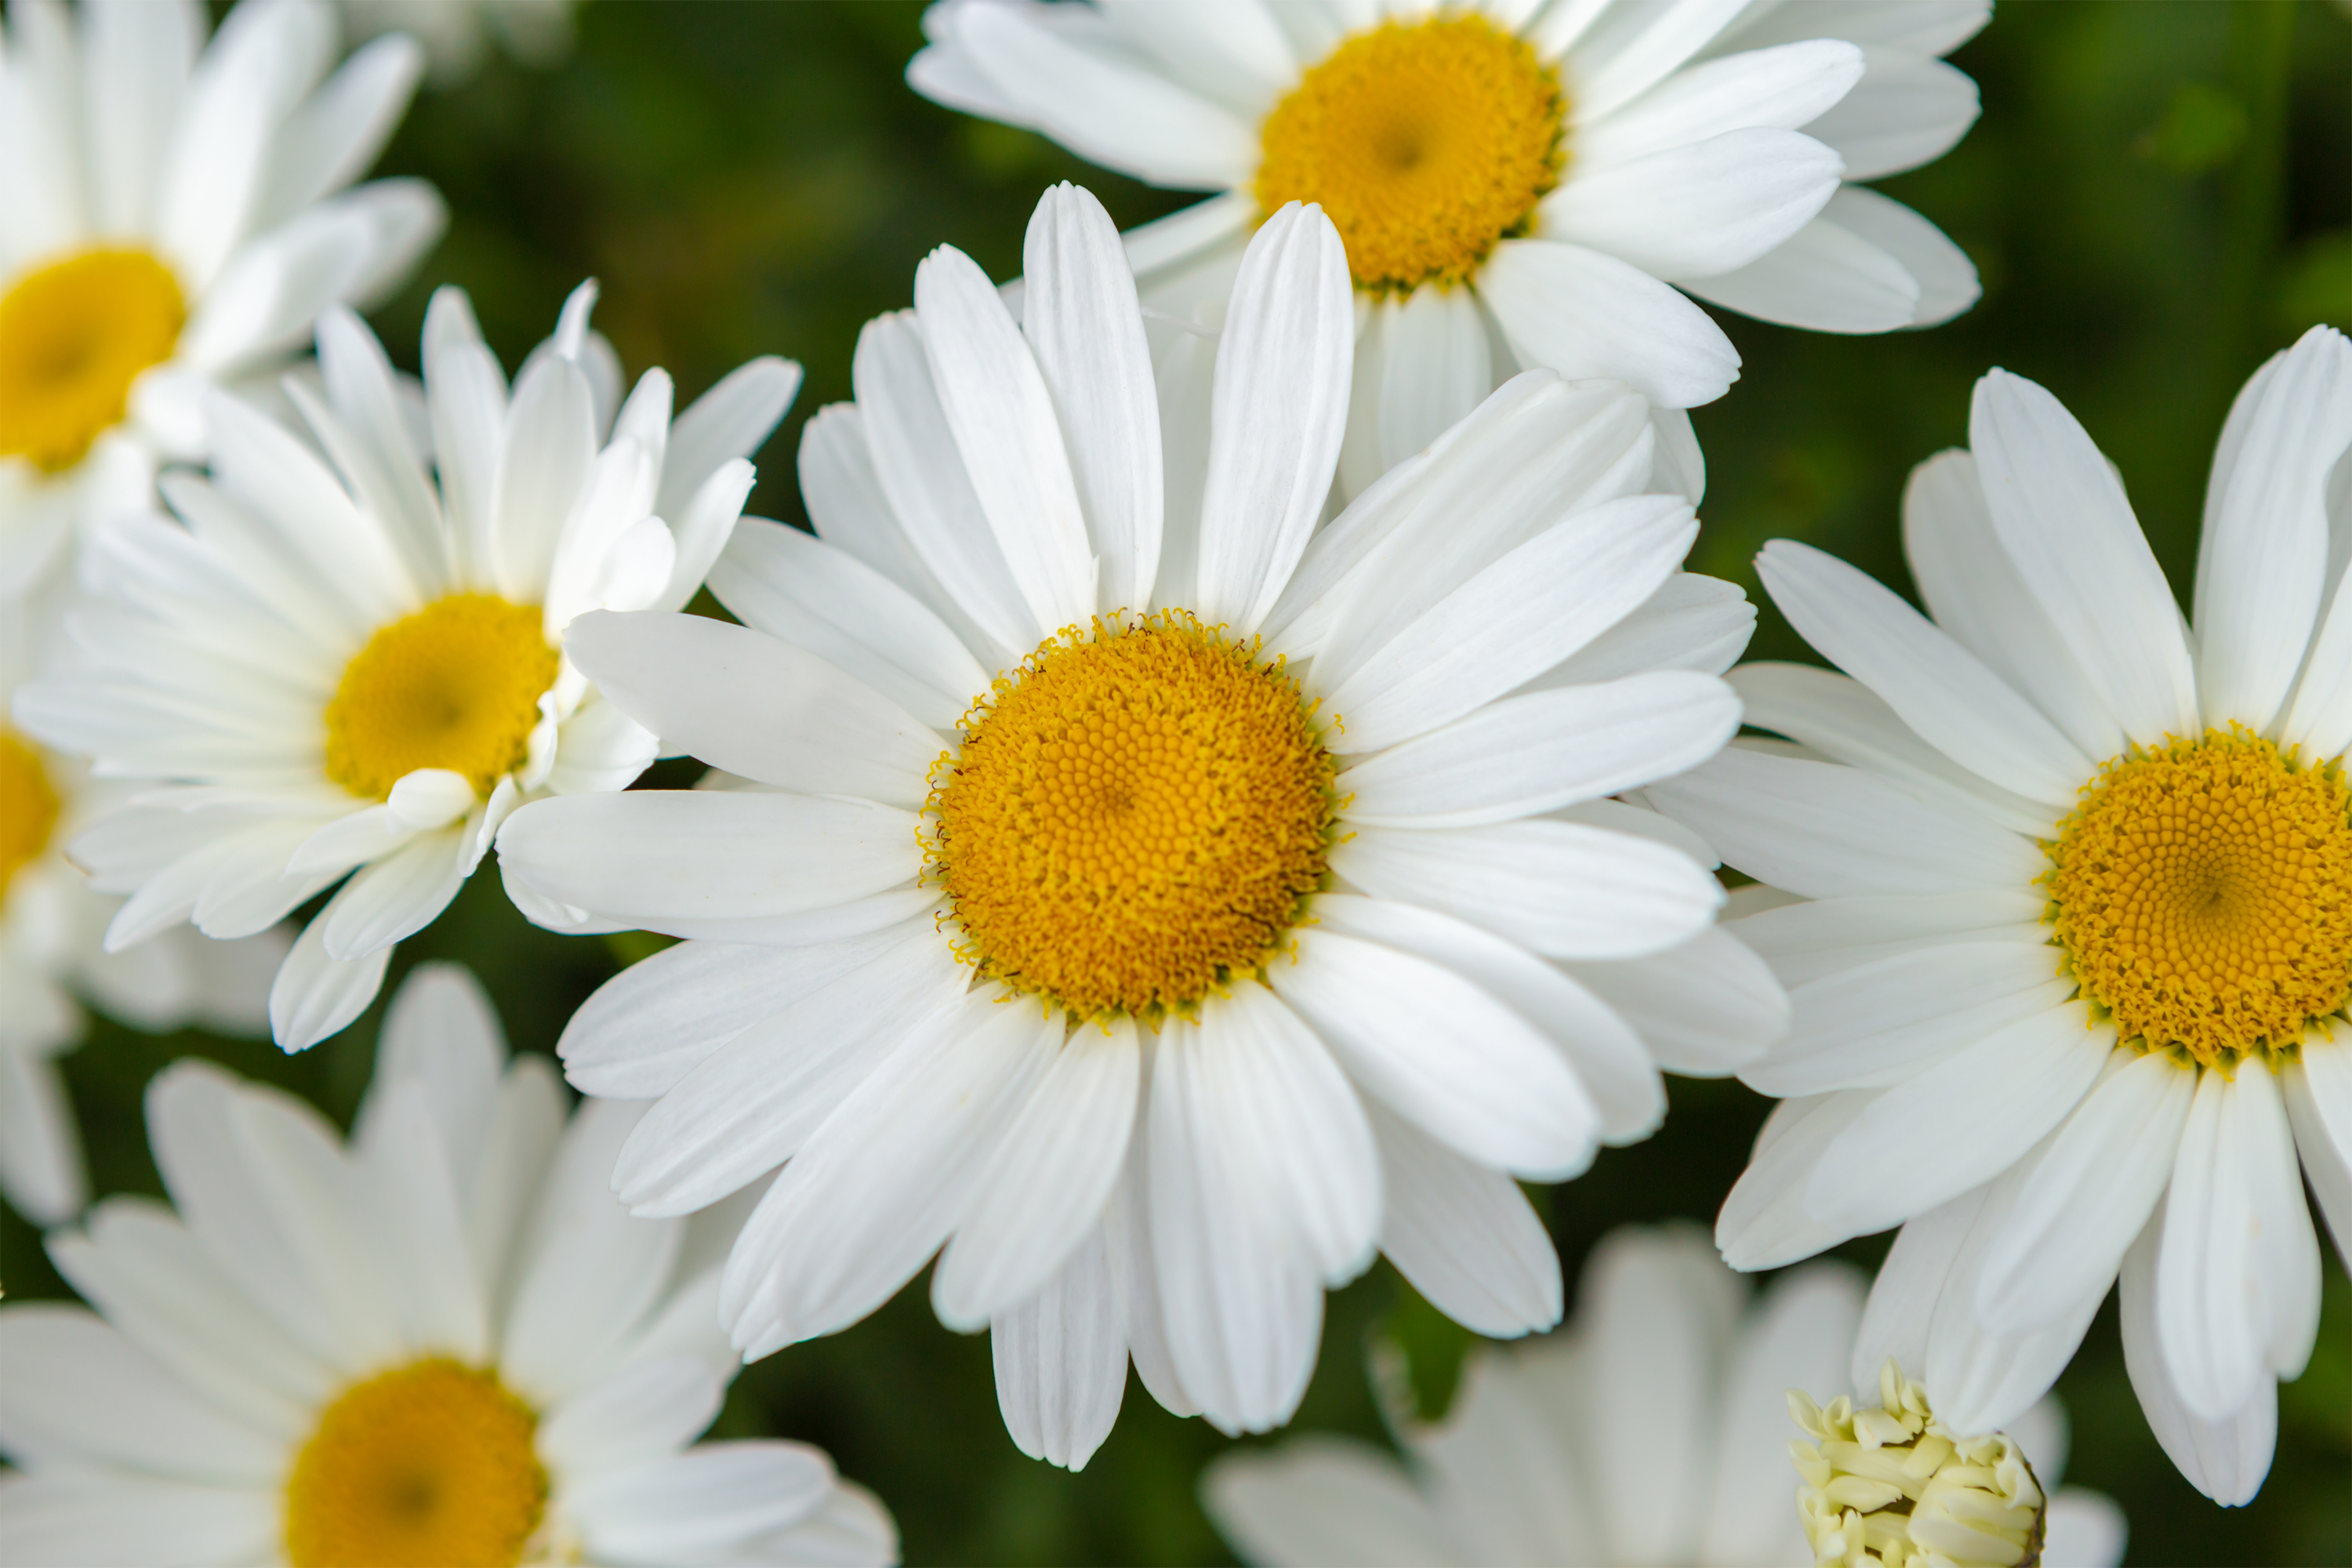 マーガレットの花びら03 無料の高画質フリー写真素材 イメージズラボ